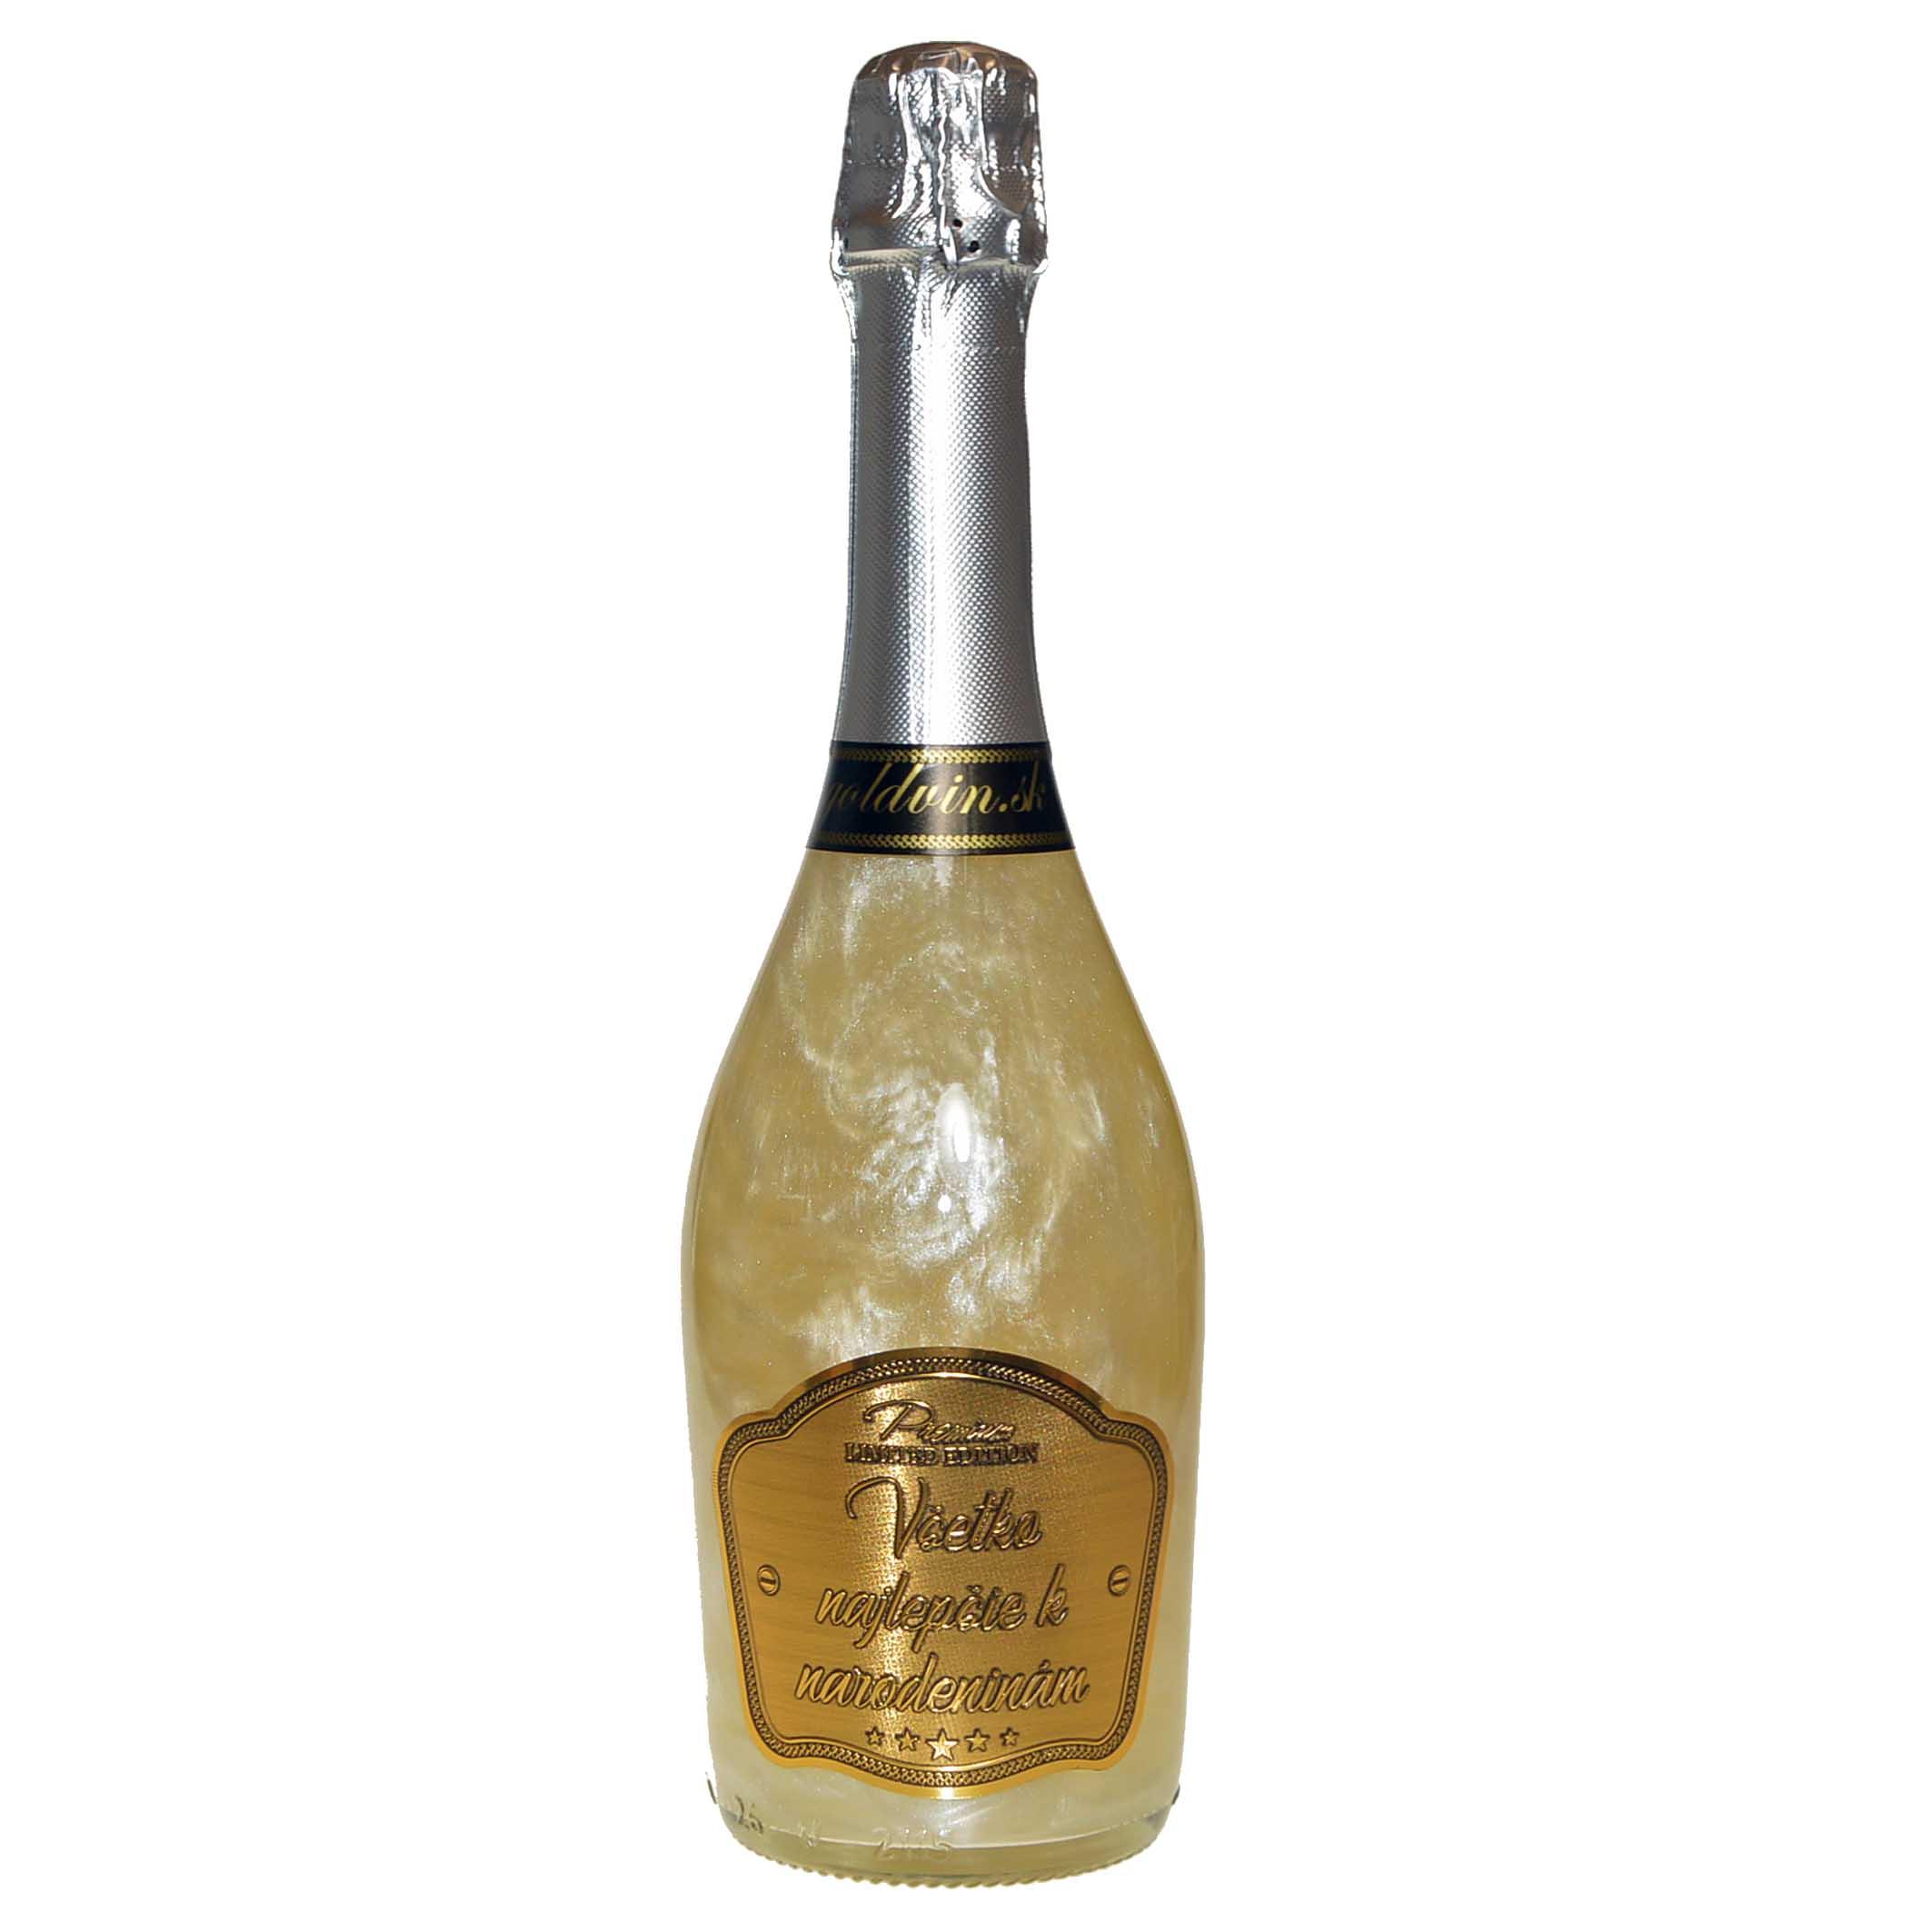 Perlové šampanské GHOST strieborné - Všetko najlepšie k narodeninám